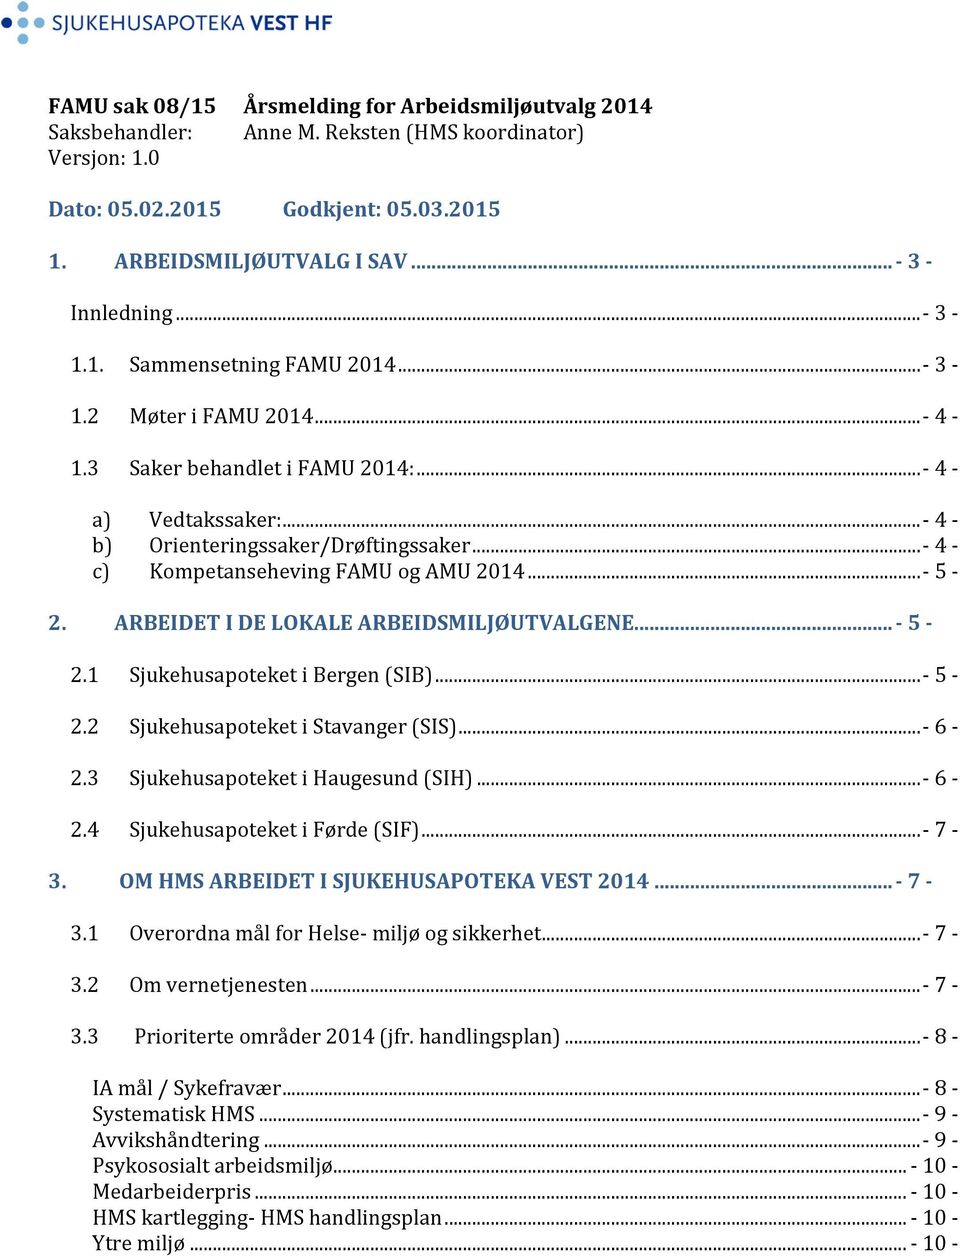 ..- 4 - c) Kompetanseheving FAMU og AMU 2014...- 5-2. ARBEIDET I DE LOKALE ARBEIDSMILJØUTVALGENE... - 5-2.1 Sjukehusapoteket i Bergen (SIB)... - 5-2.2 Sjukehusapoteket i Stavanger (SIS)... - 6-2.